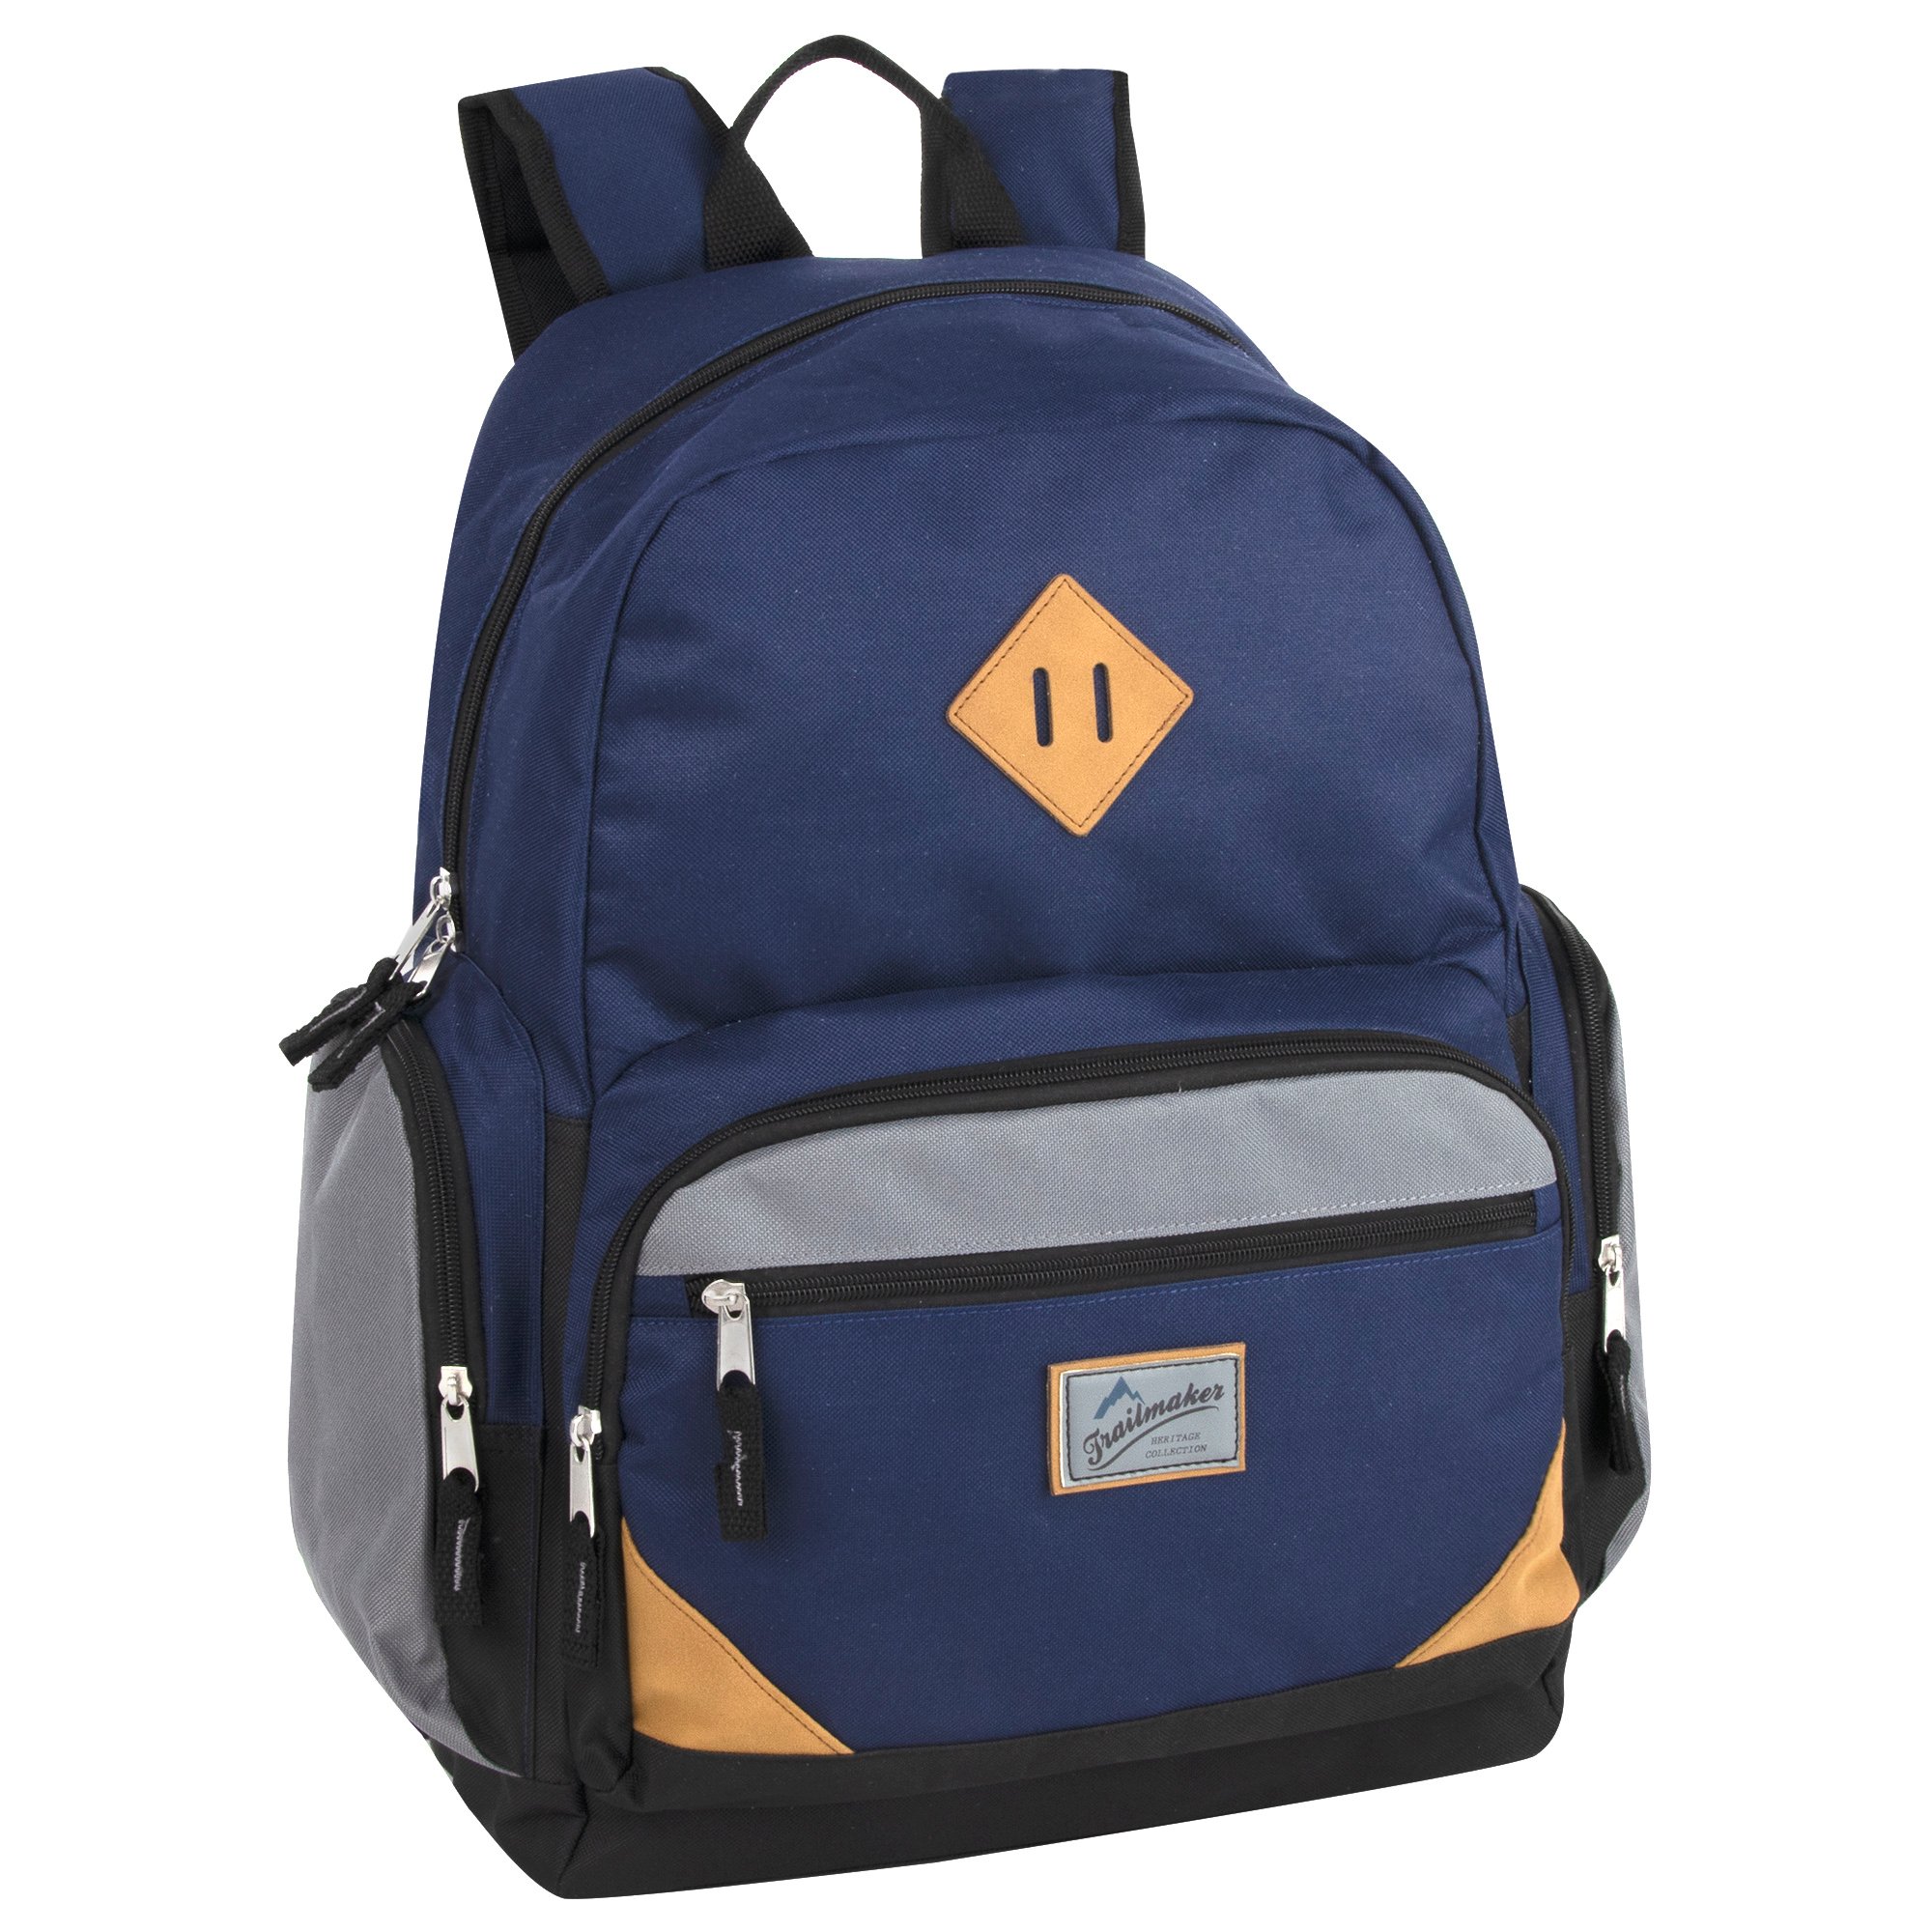 Trailmaker Everyday Backpack - Blue - Shop Backpacks at H-E-B